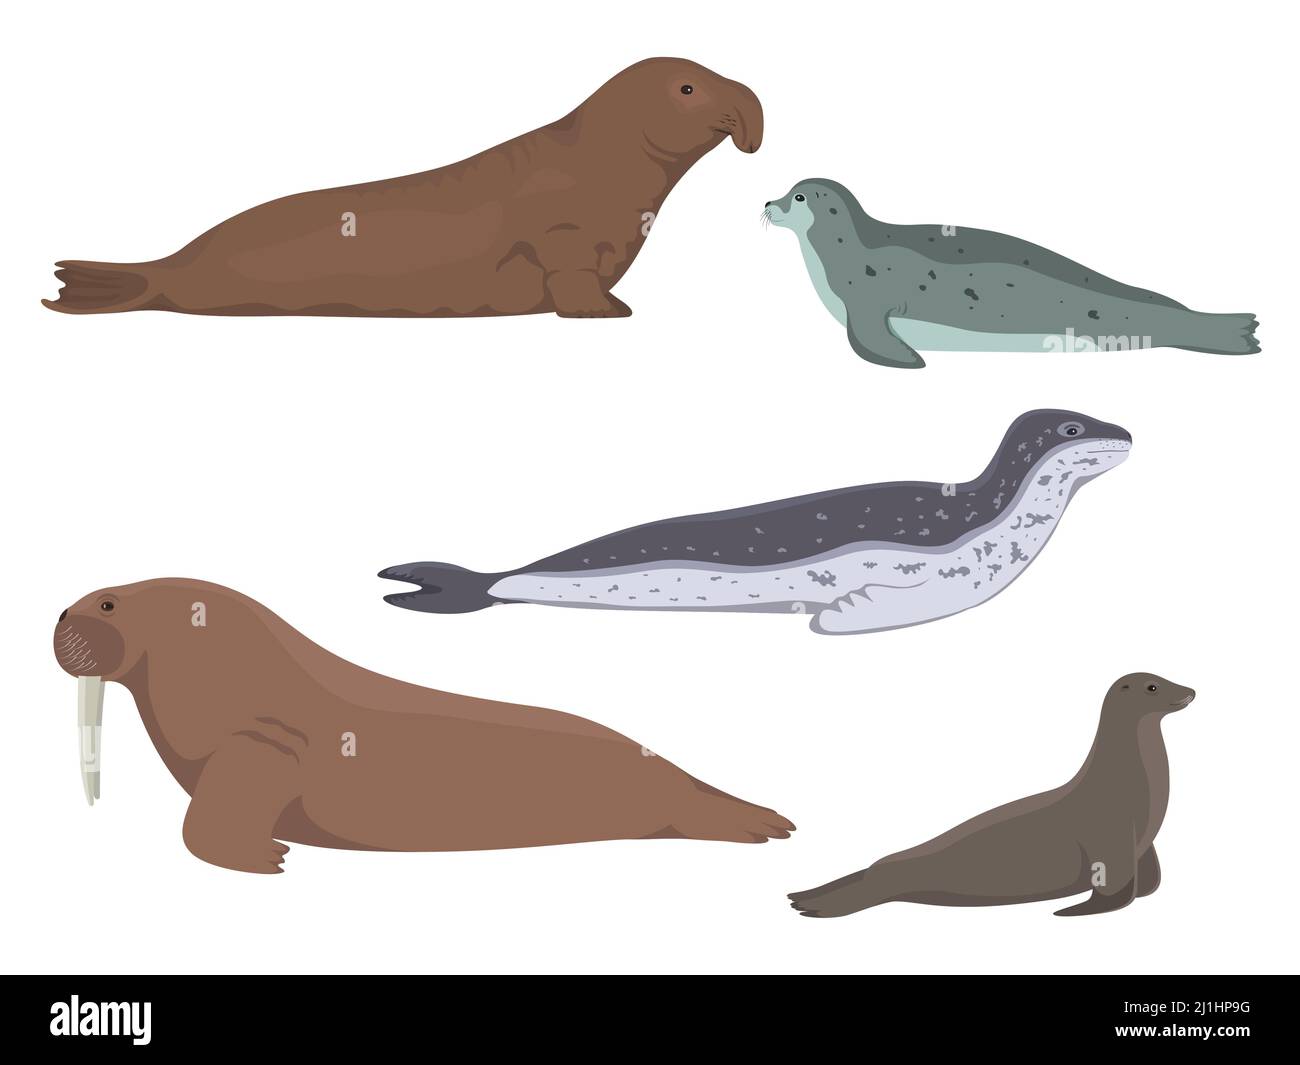 Animali pinniped. Illustrazione vettoriale di un insieme di animali acquatici settentrionali dell'antartico isolati su sfondo bianco. Elefante di mare, sigillo, leopardo, leone Illustrazione Vettoriale